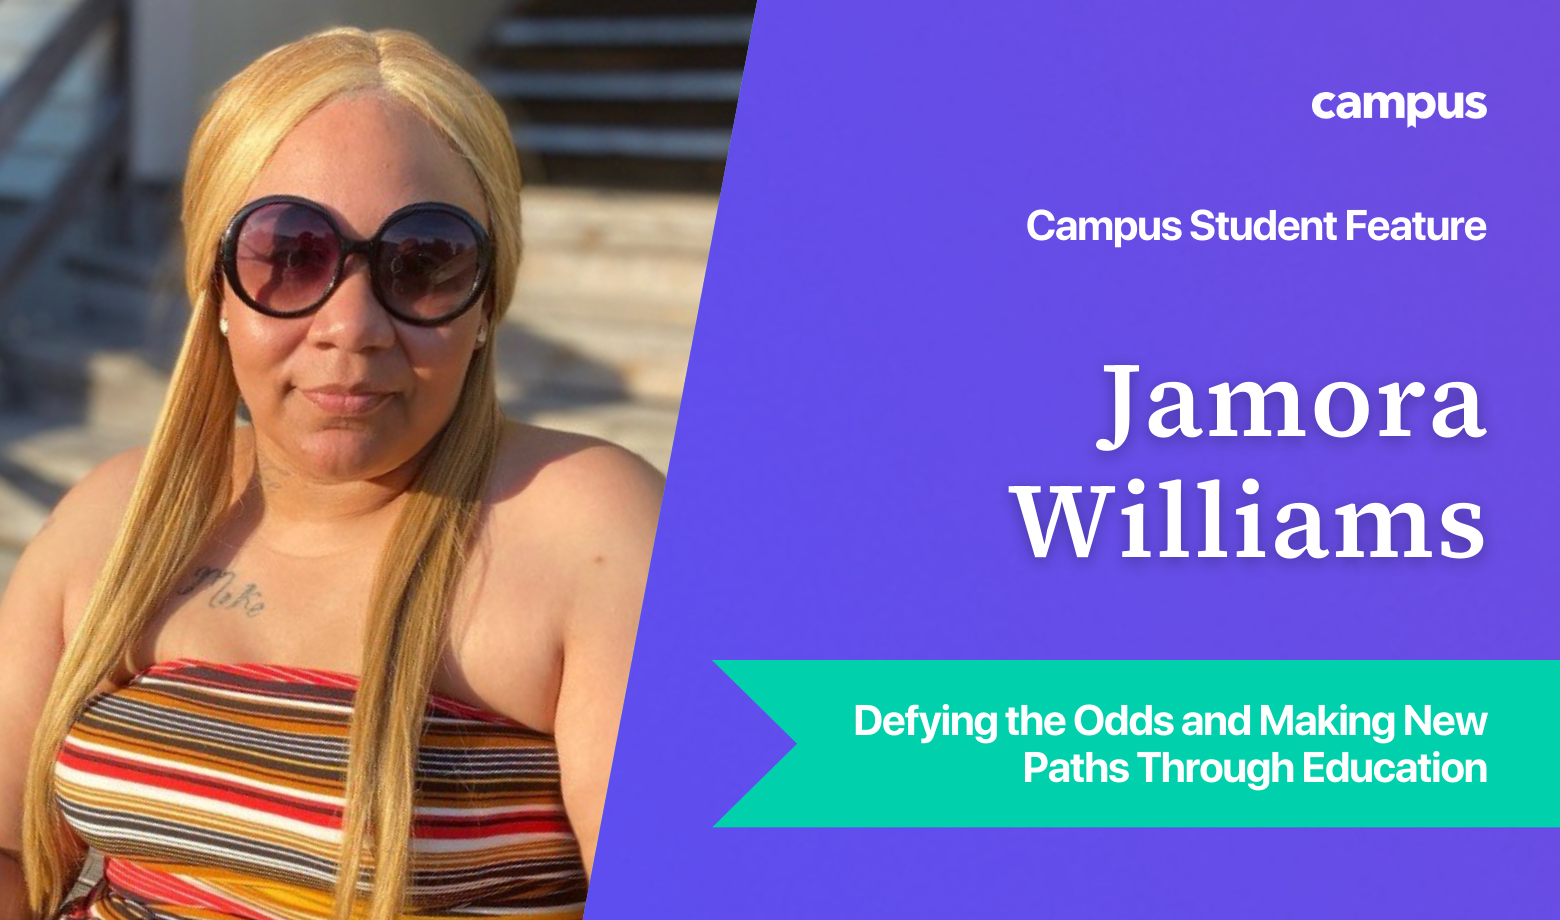 Campus Student Feature: Jamora Williams